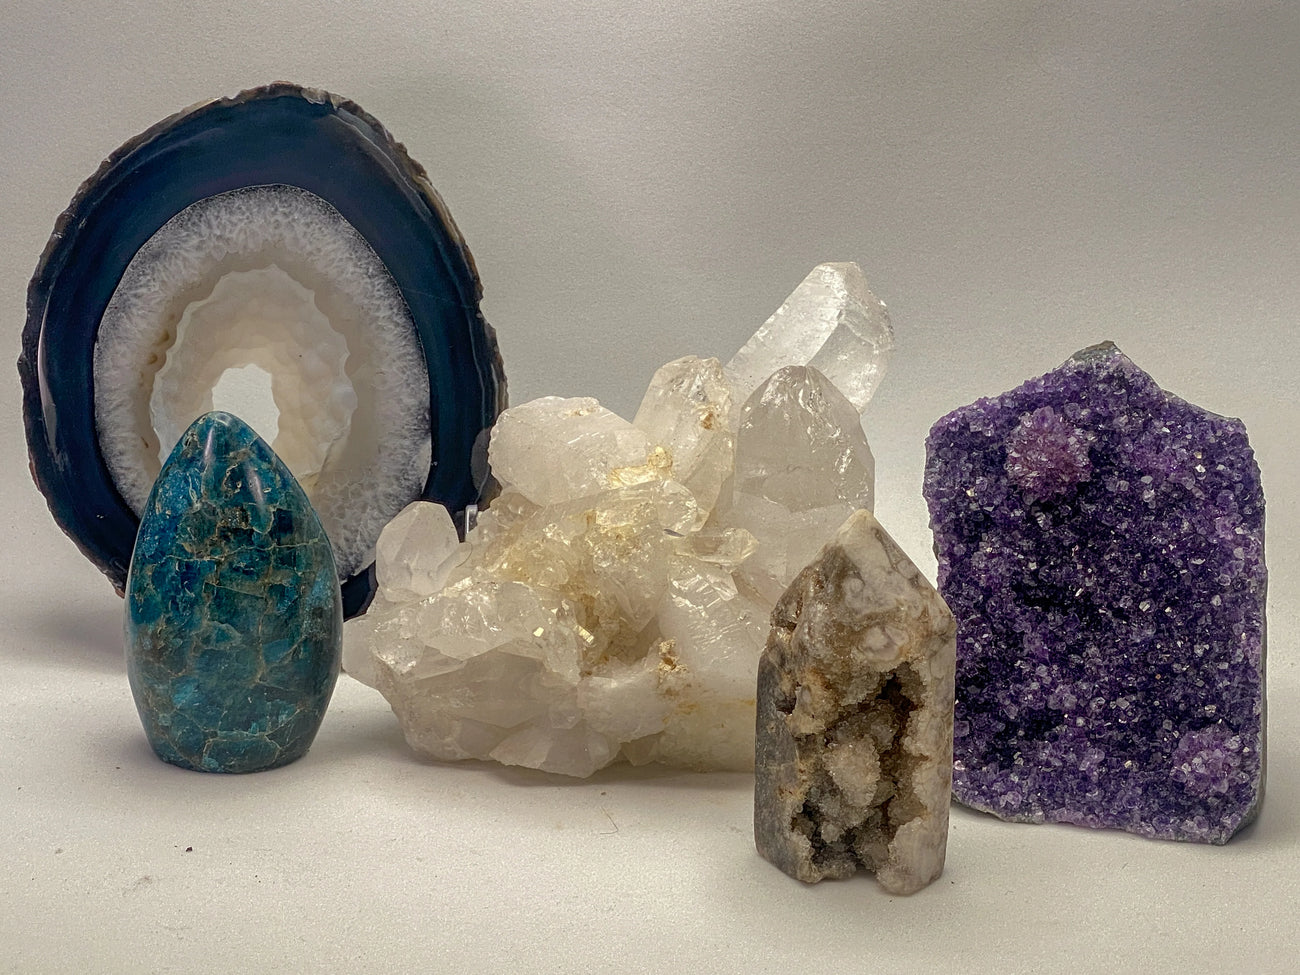 Rocks and Crystals | 'rocks, crystals, fossils' - RocciaRoba